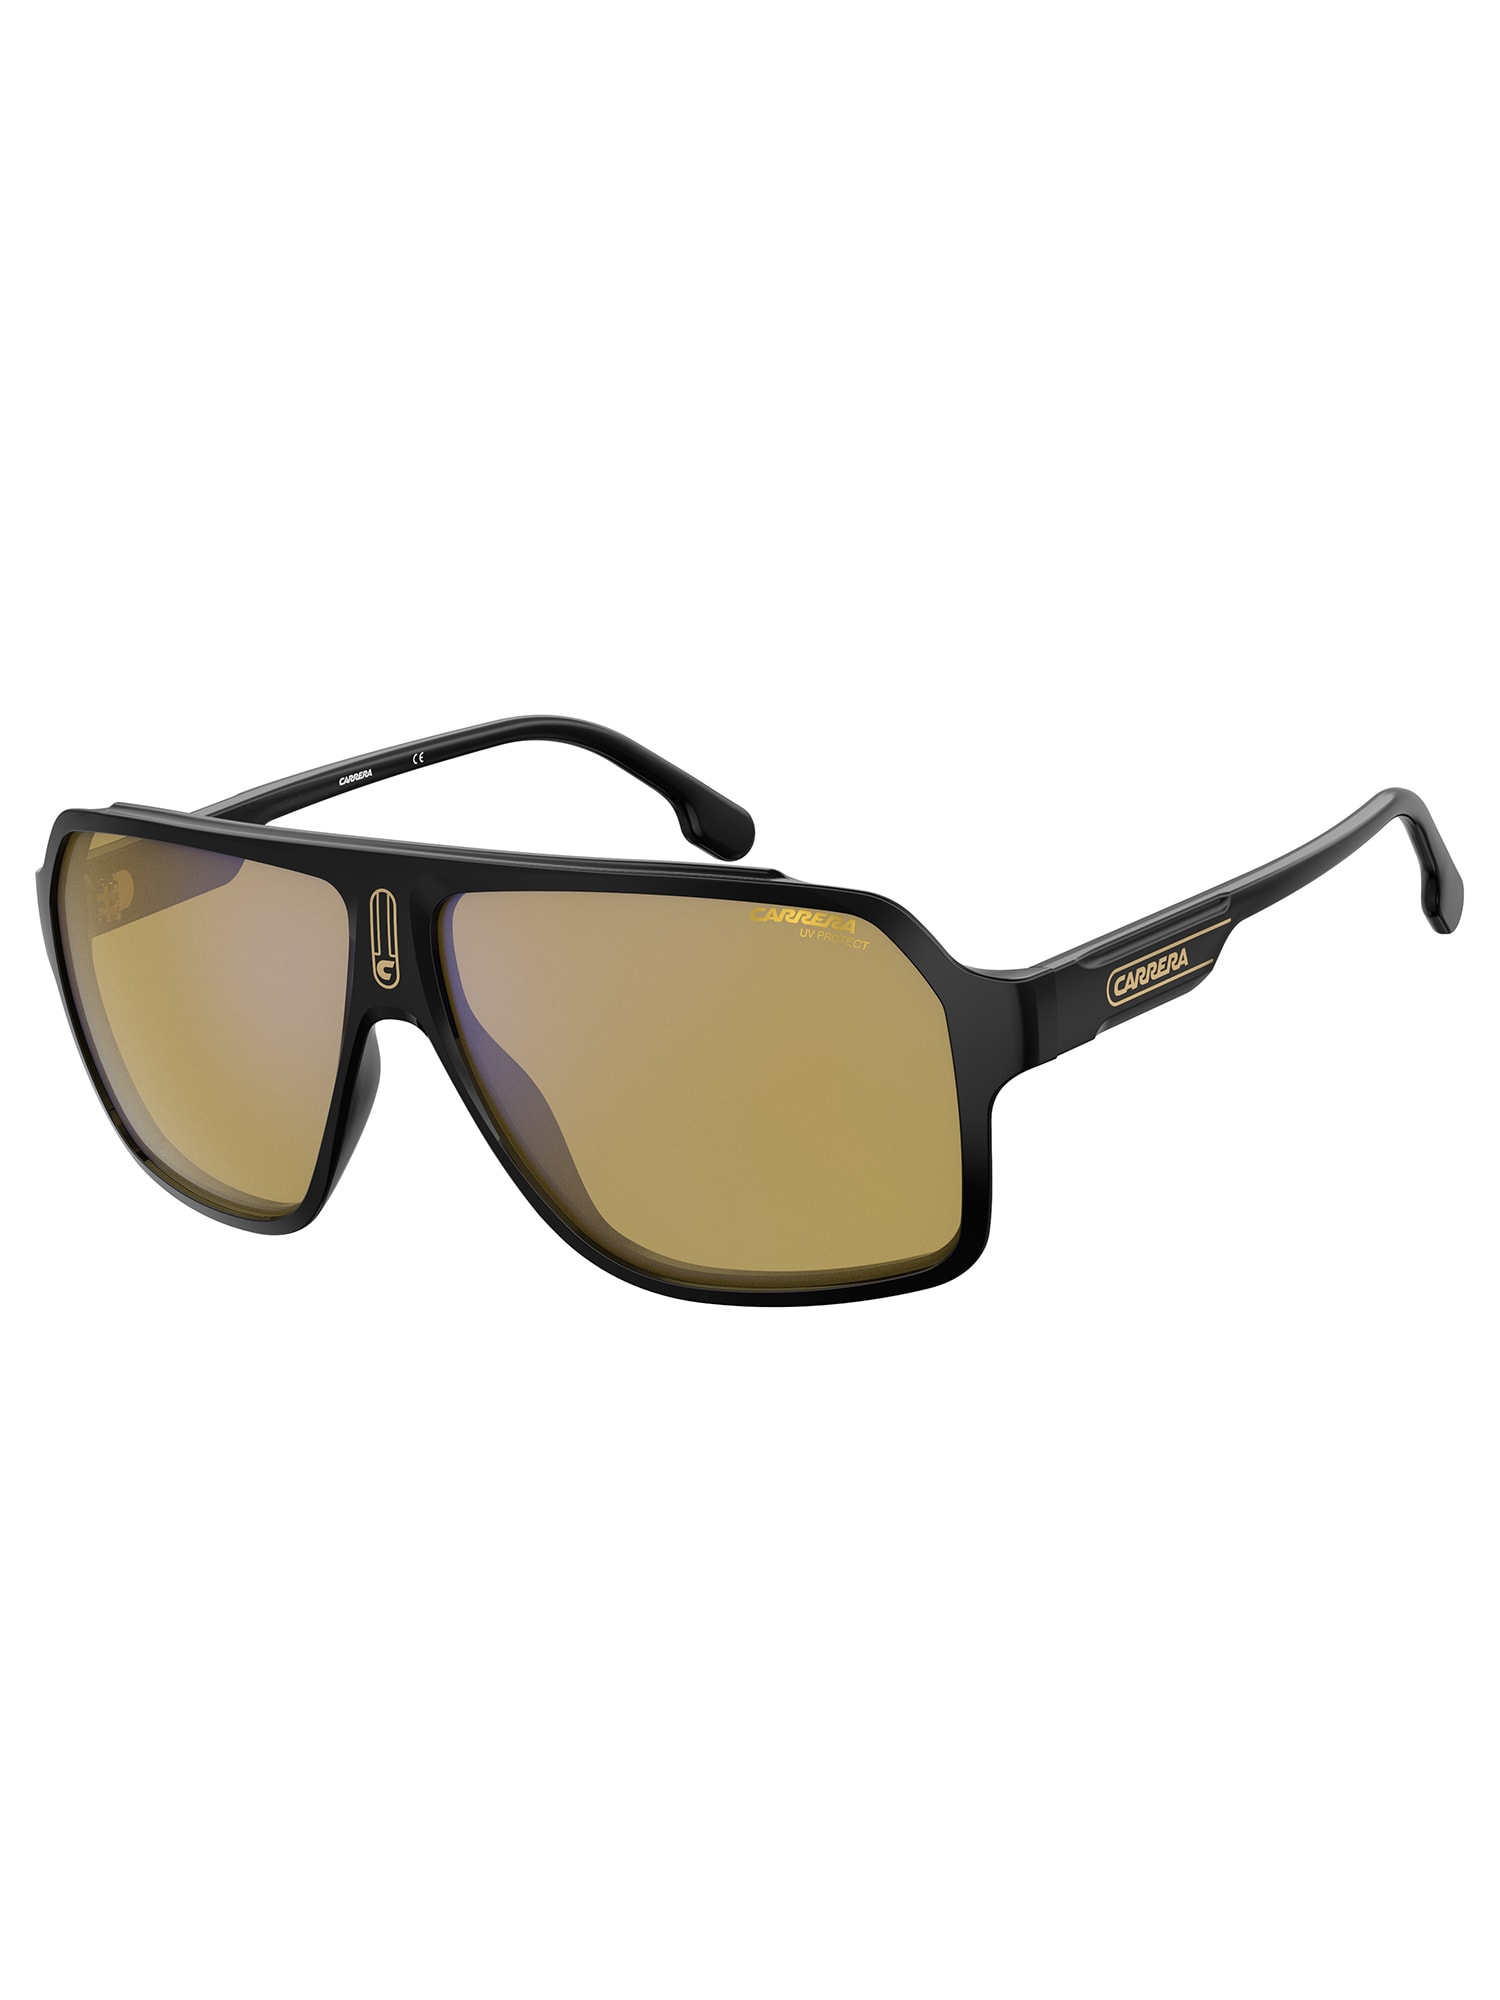 Carrera 1030/s Sunglasses In Black Yellow